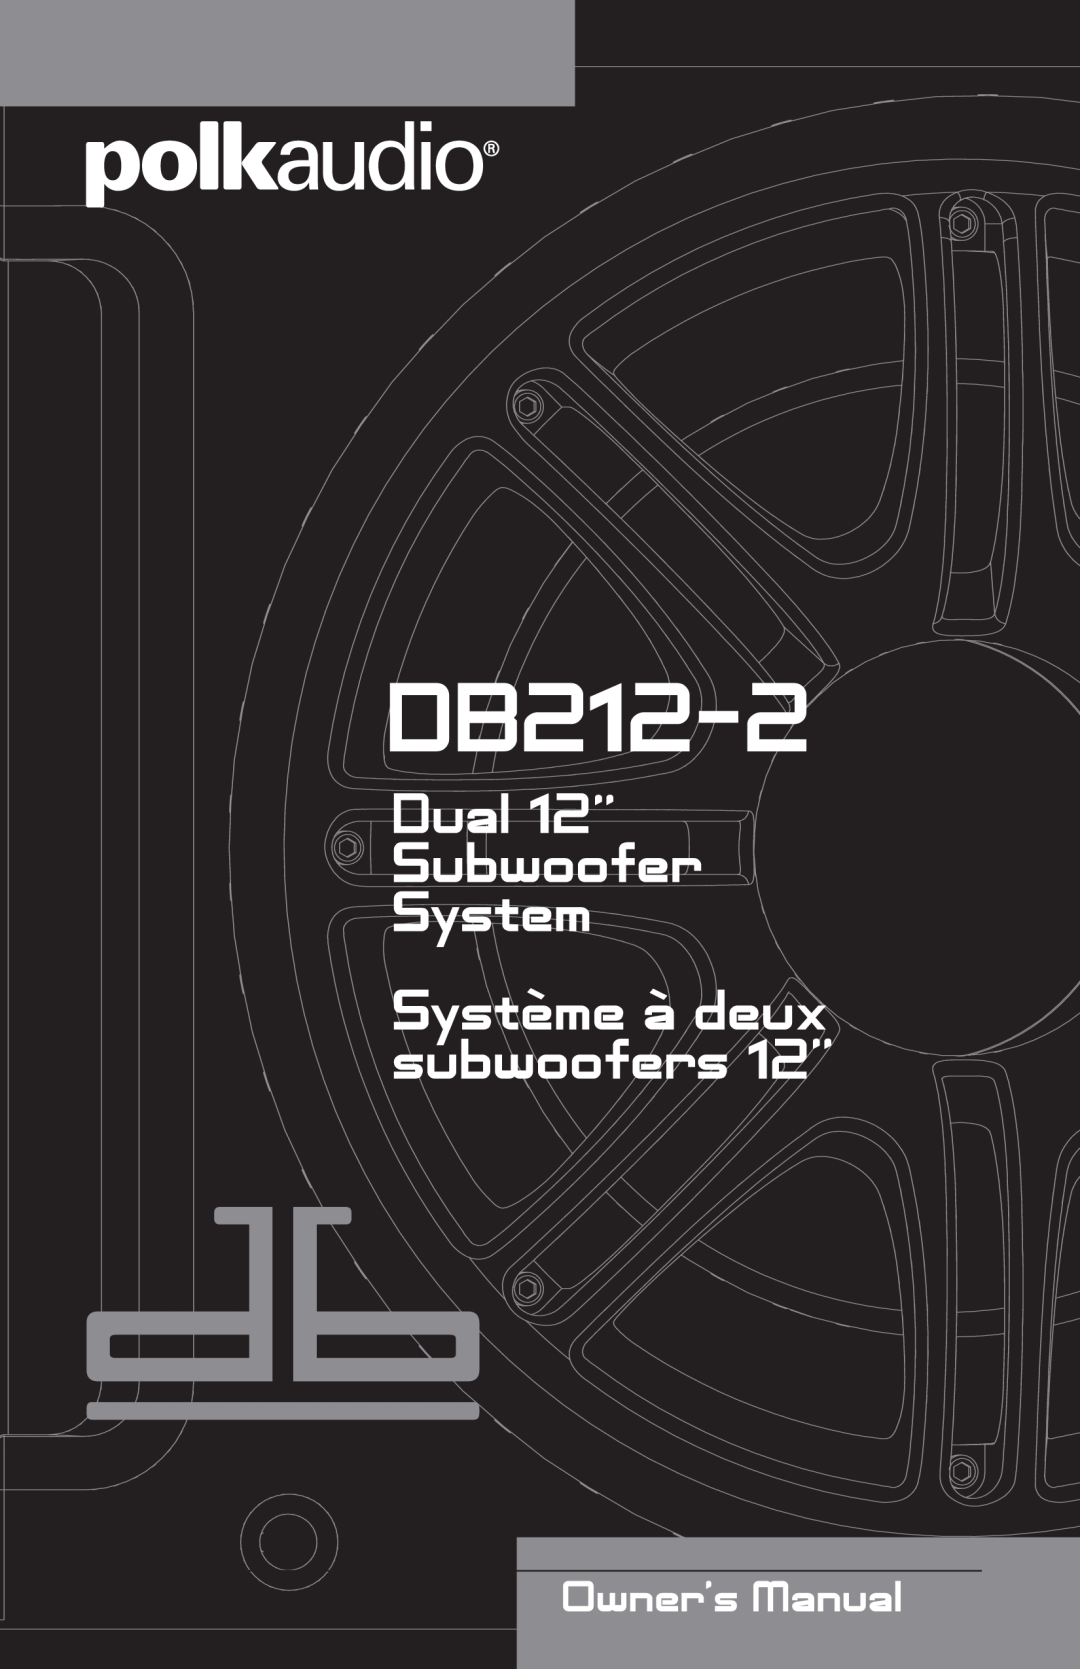 Polk Audio DB212-2 manual 